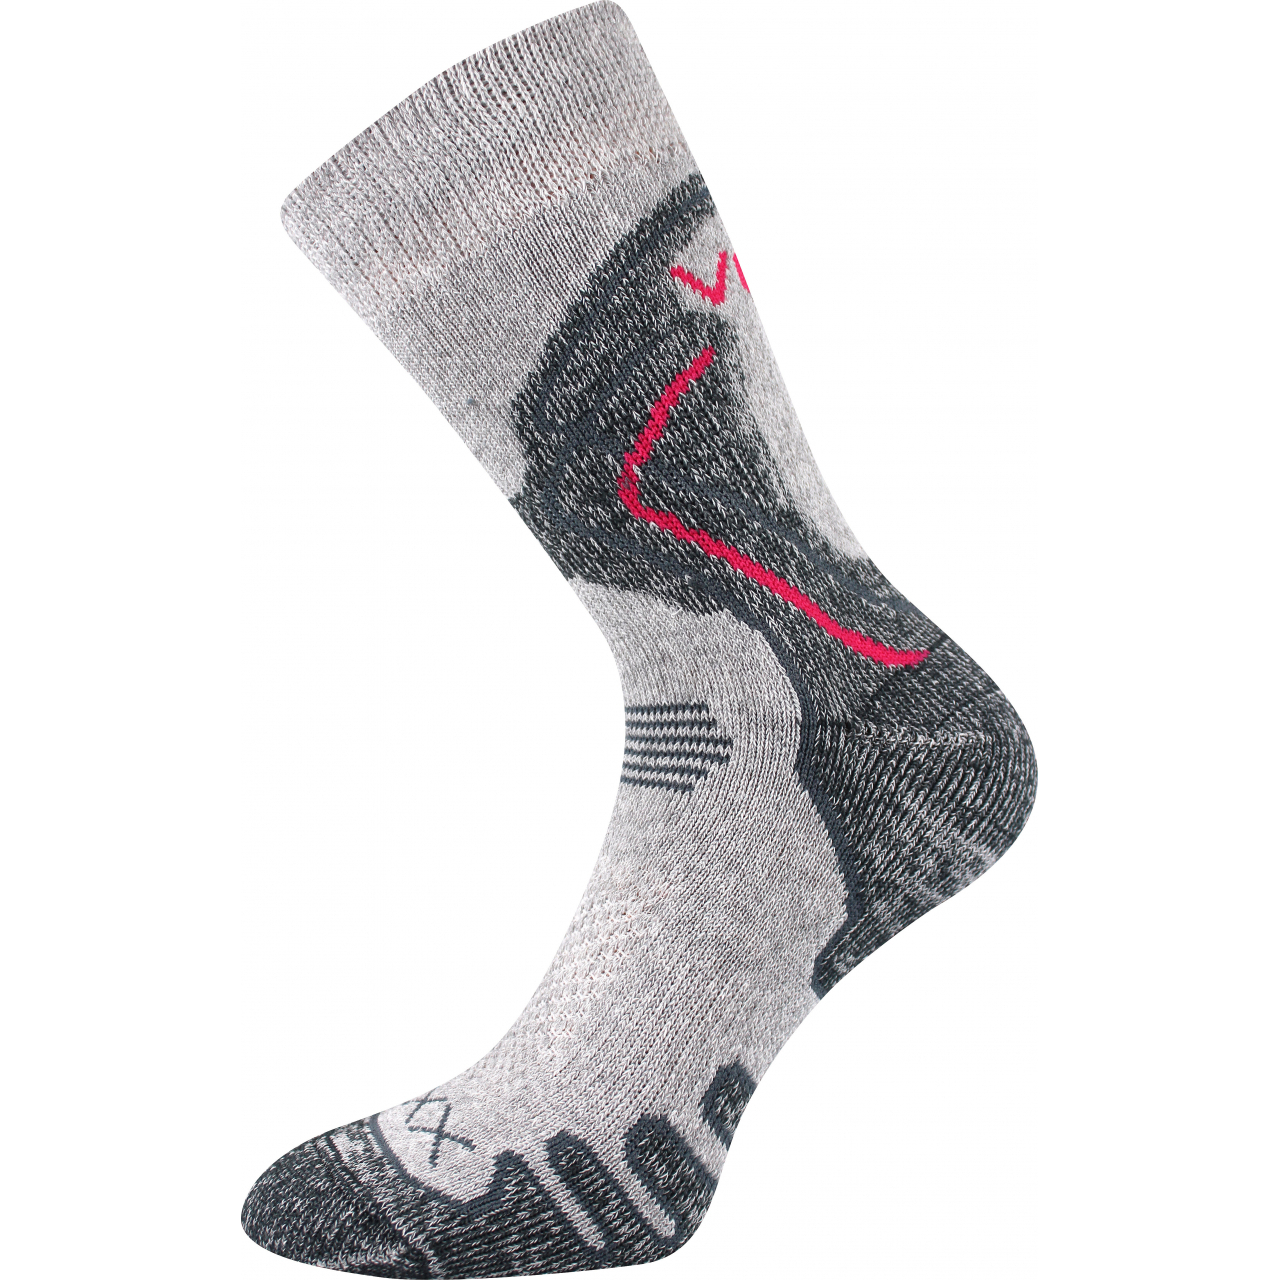 Ponožky trekingové unisex Voxx Limit III - světle šedé, 39-42